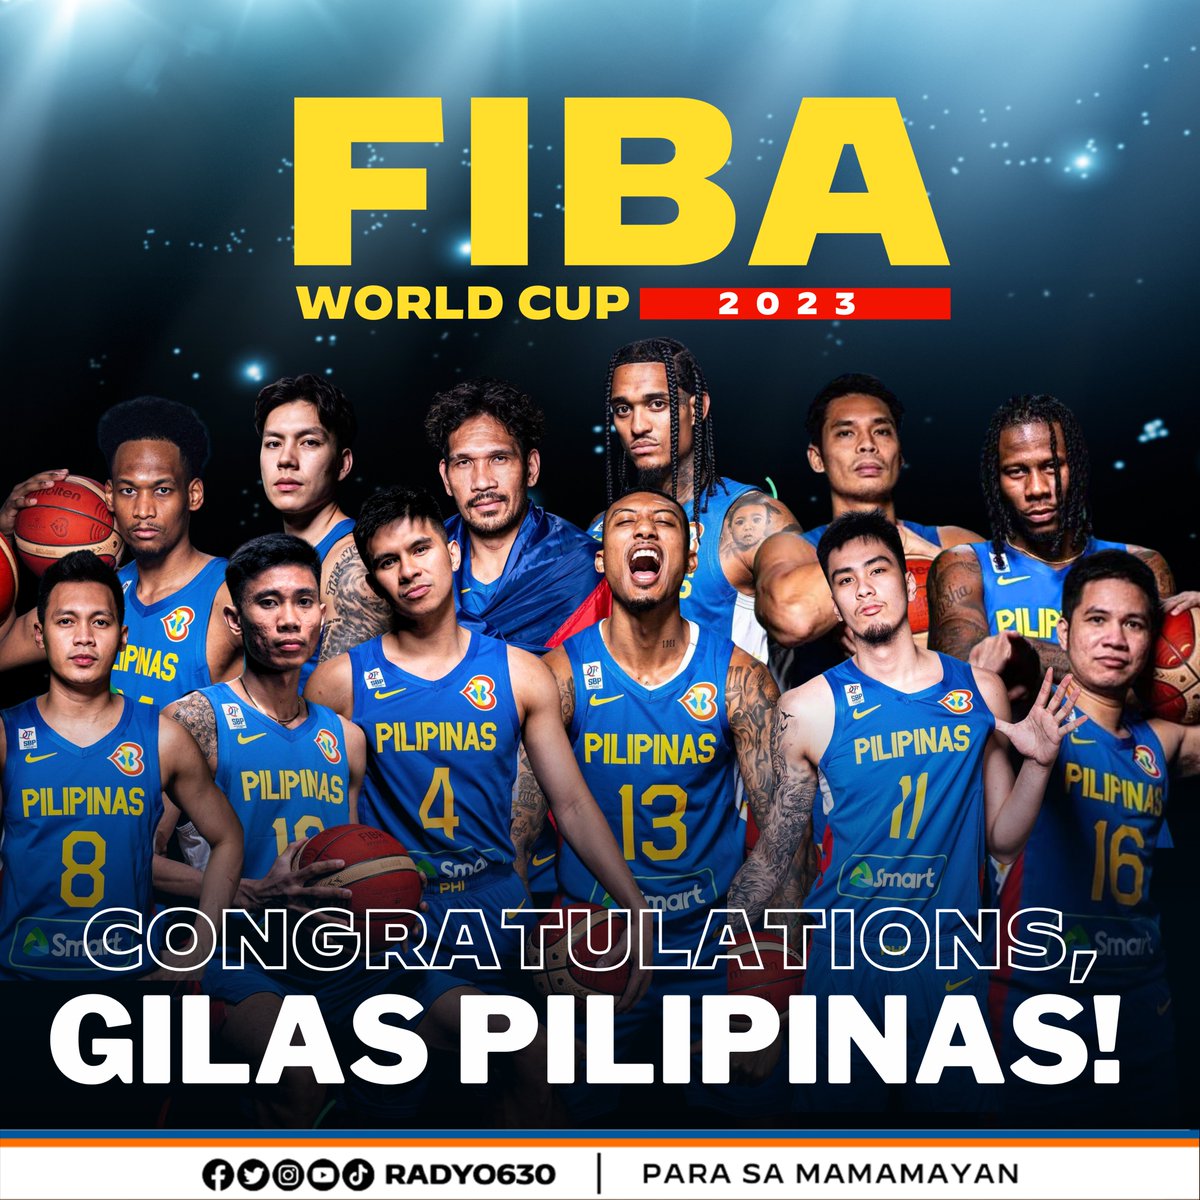 #WinForPILIPINAS 🇵🇭

Congratulations Team Gilas Pilipinas sa kanilang unang panalo sa FIBA World Cup 2023 laban sa kupunan China. Lumamang ang Gilas sa score na 96 - 75.

#Radyo630 #FIBAWC #GilasPilipinas #WinForGilas